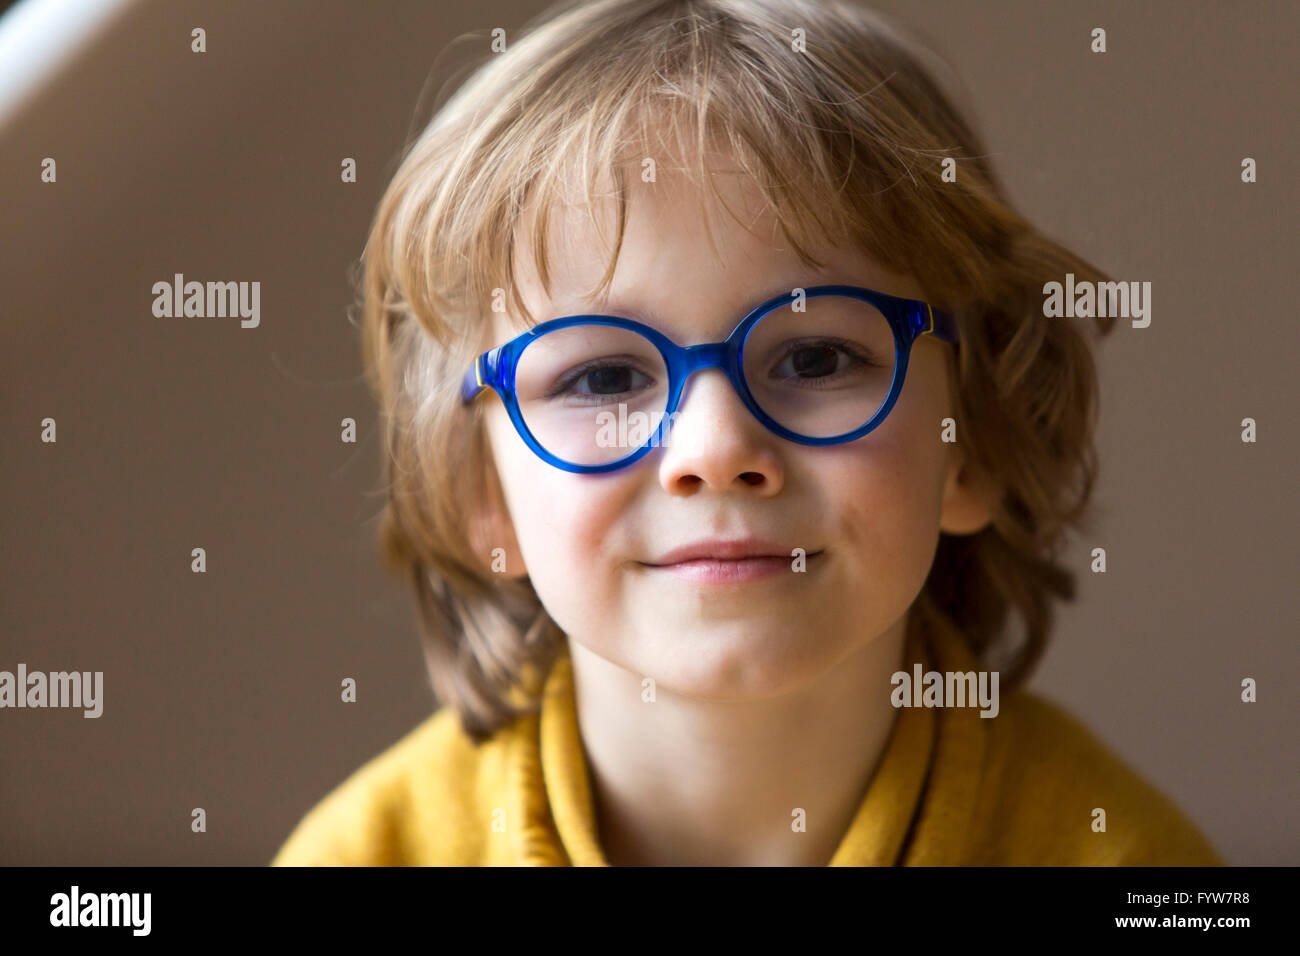 Junge, 6 Jahre alt, sieht freundlich aus, lächelt, mit Brille, mit einem blauen Rahmen, Stockfoto